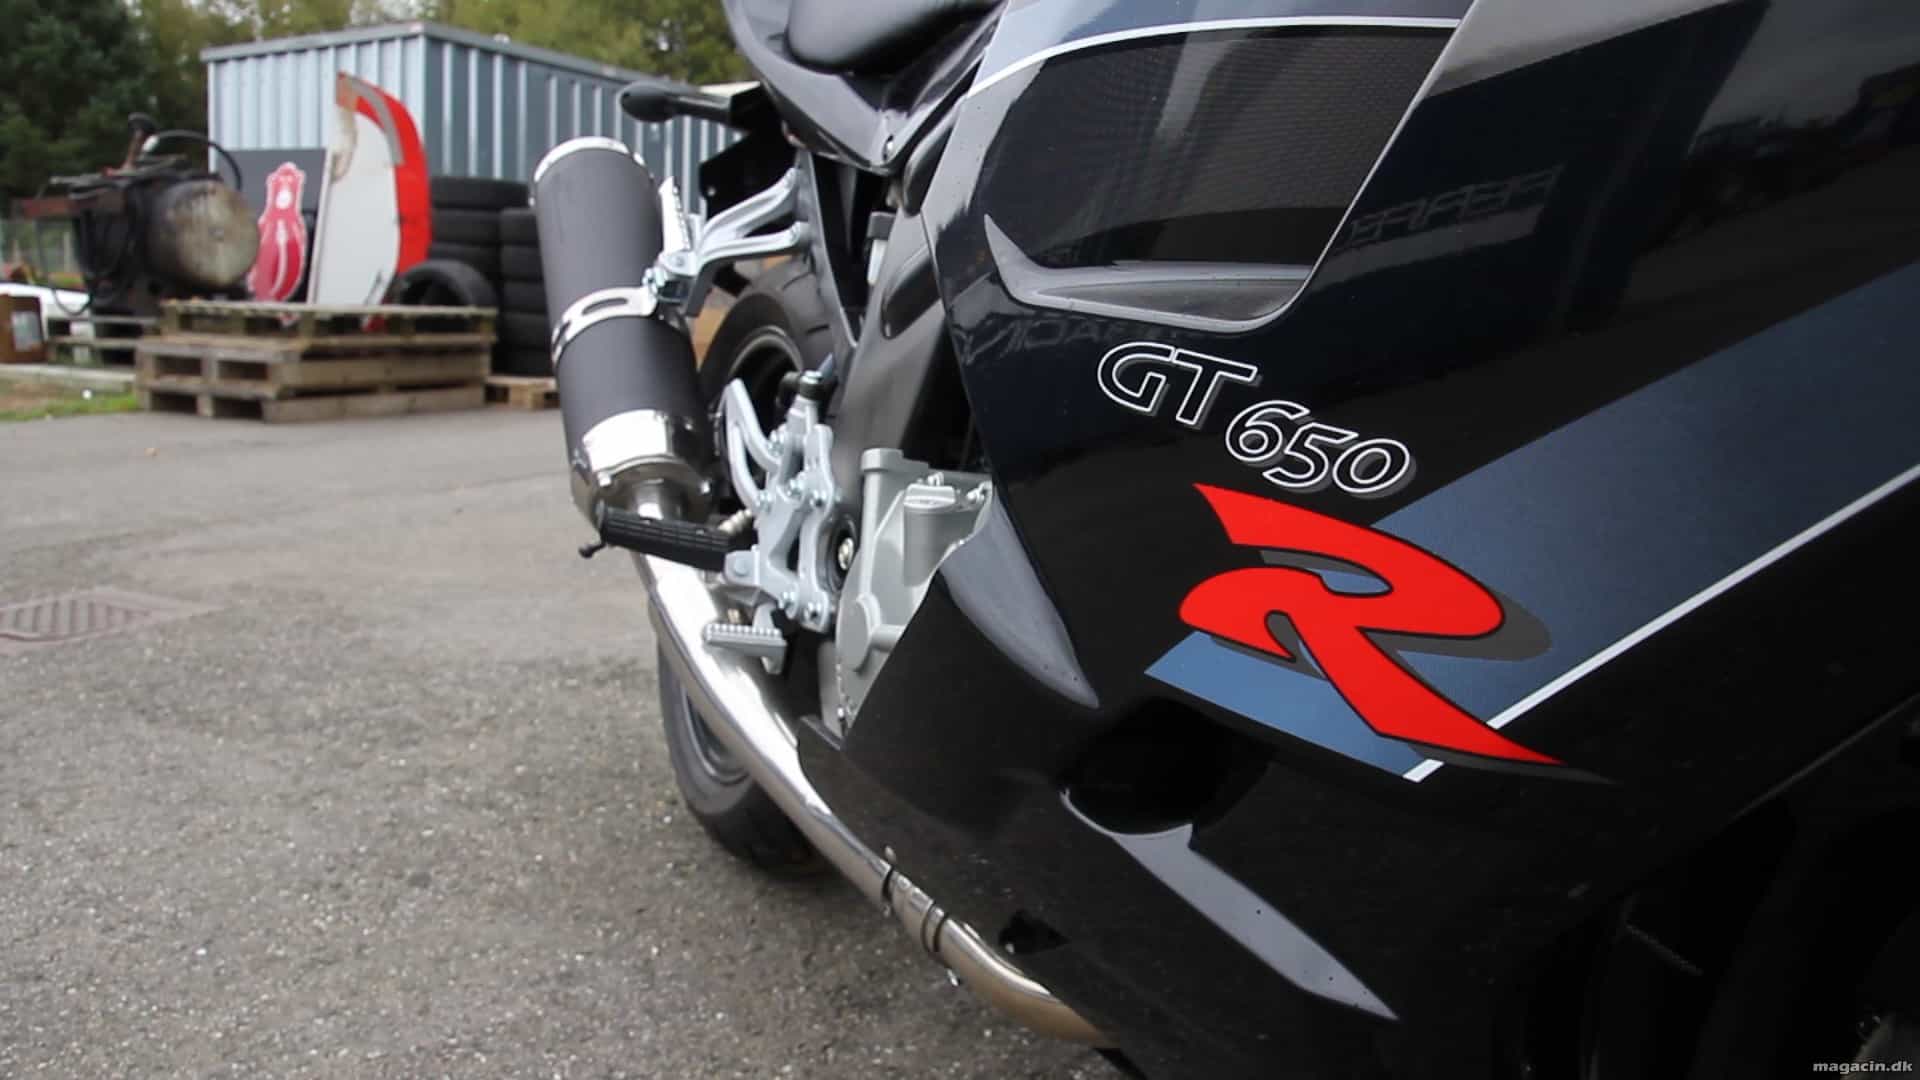 Test: Hyosung GT 650 R – Fin koreansk  motorcykel